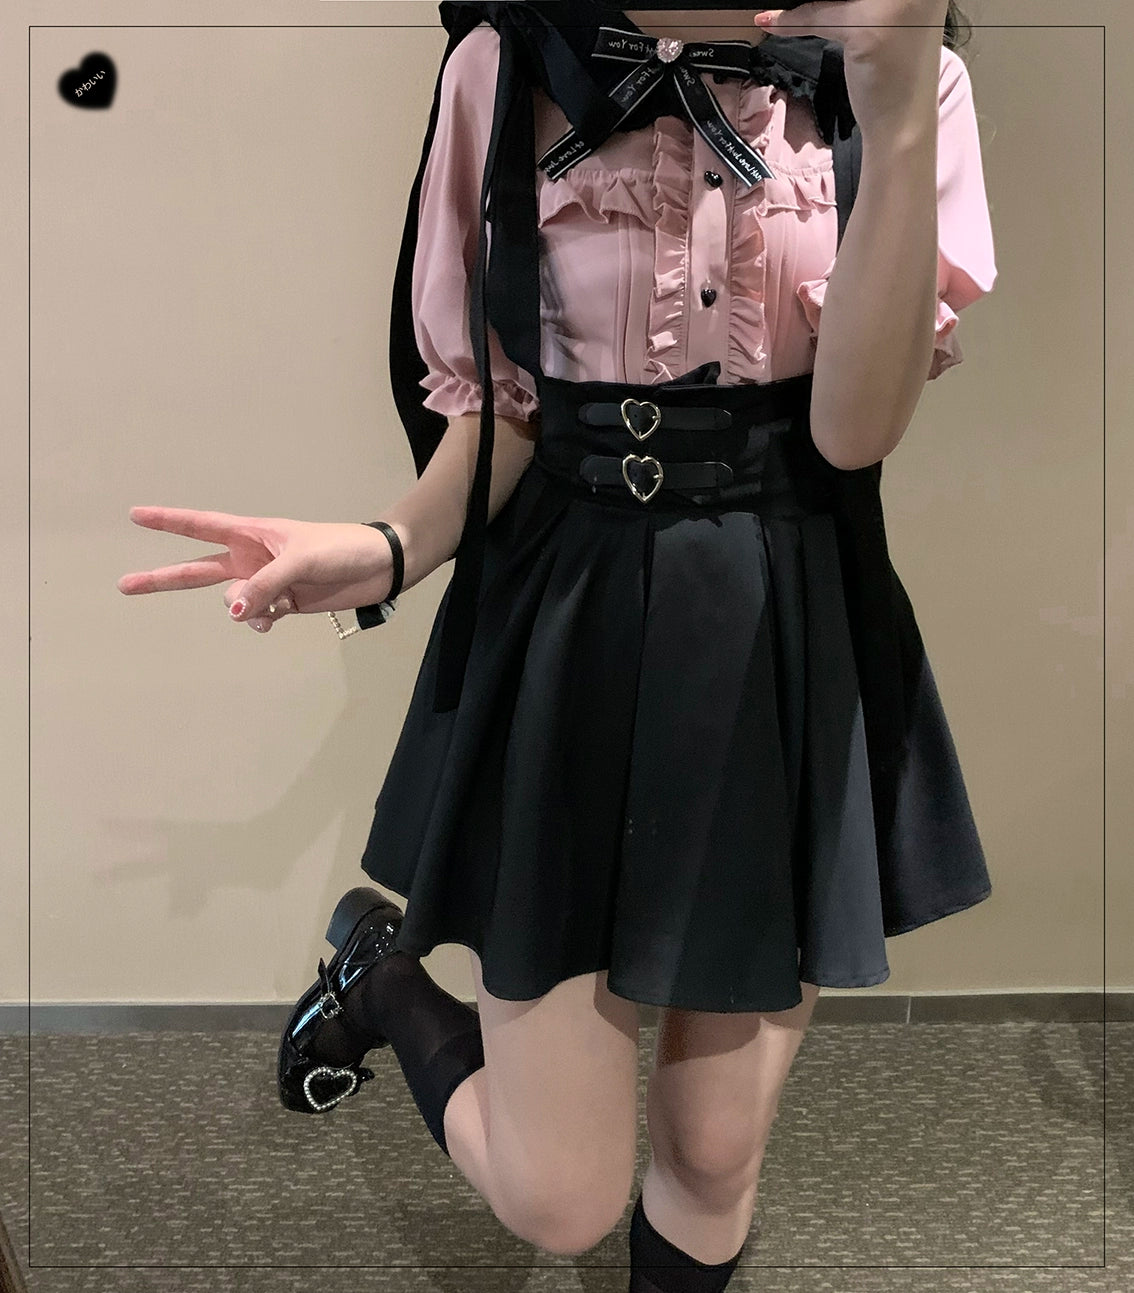 Jirai Kei Overall Dress Salopette Heart Buckle Suspender Skirt 35386:526738